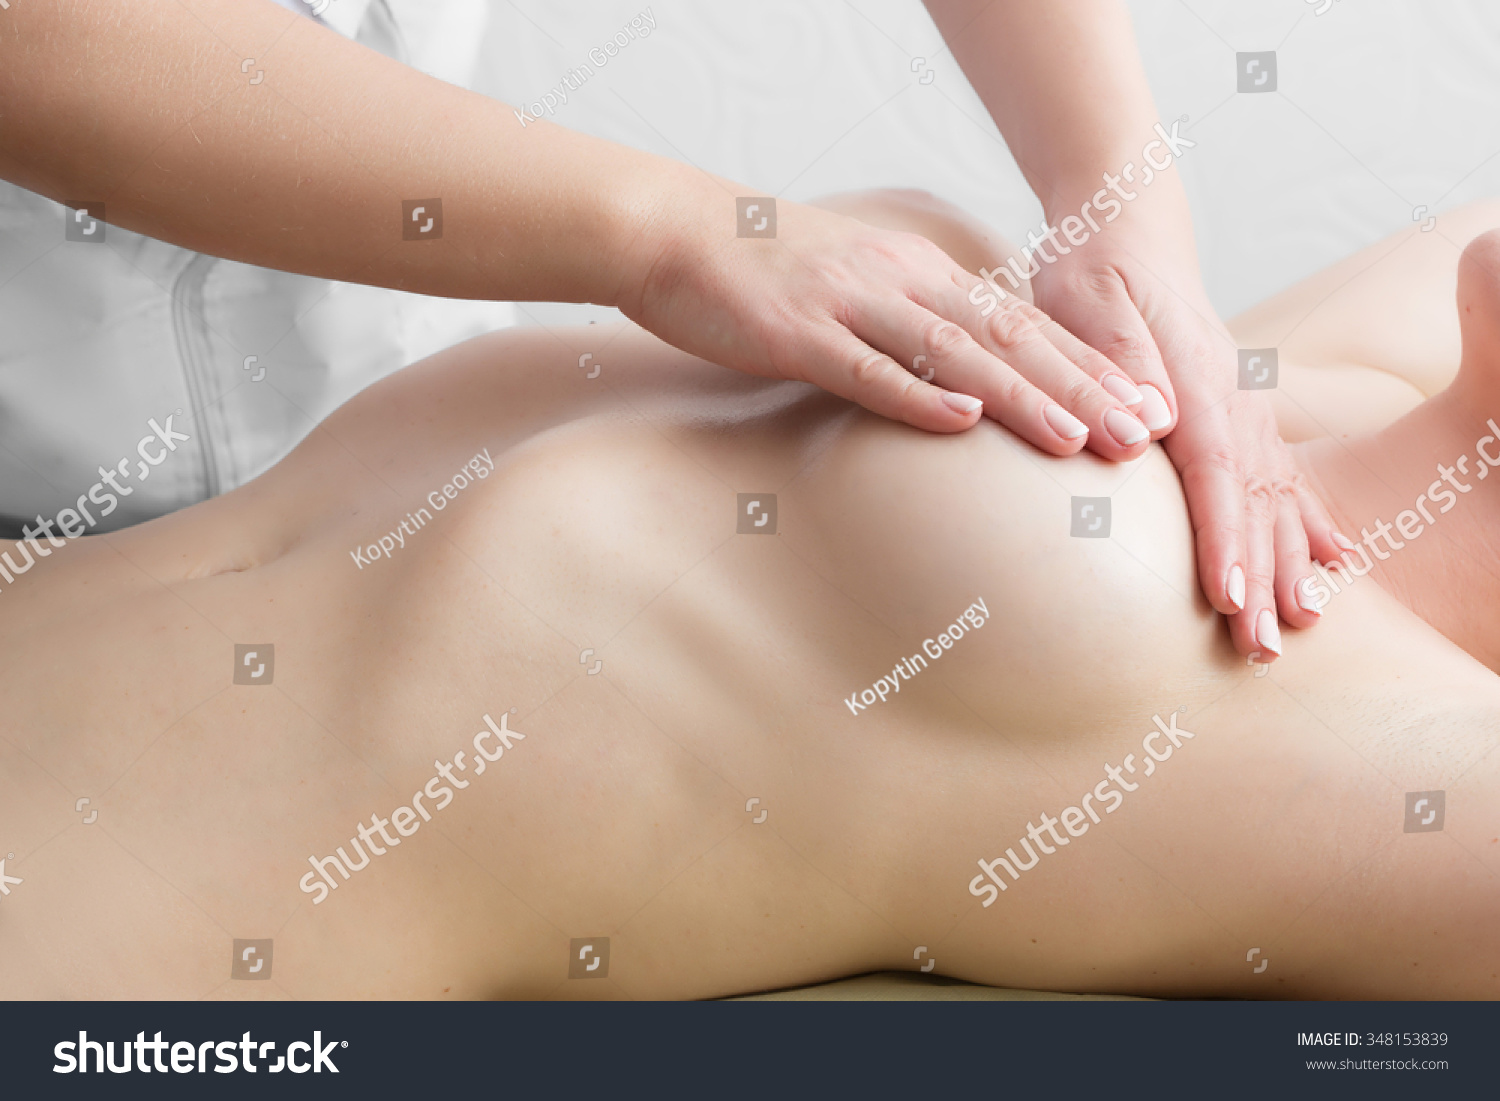 эротический массаж груди у женщин фото 59